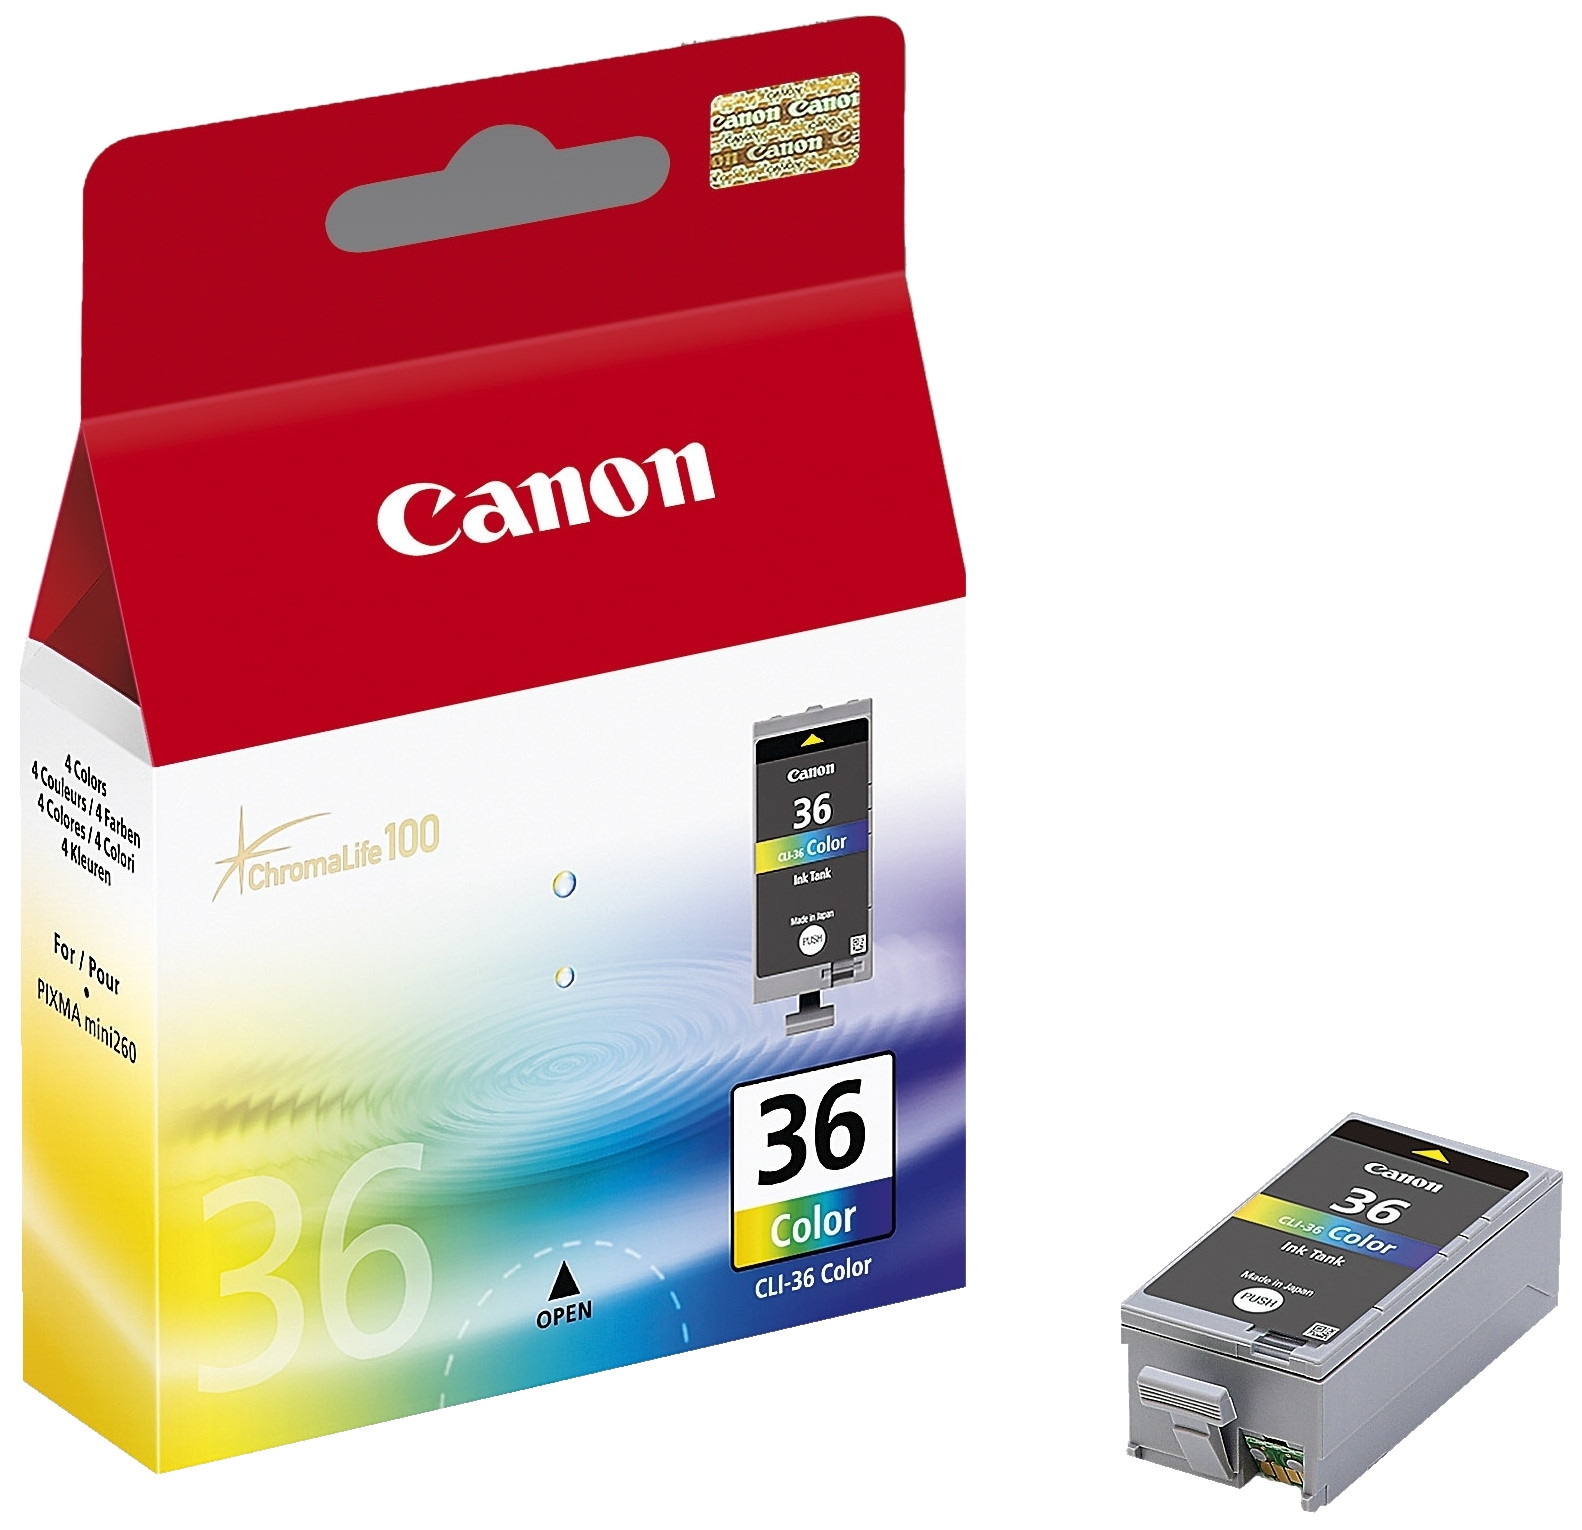 Картридж для струйного принтера Canon CLI-36 Color цветной, оригинал